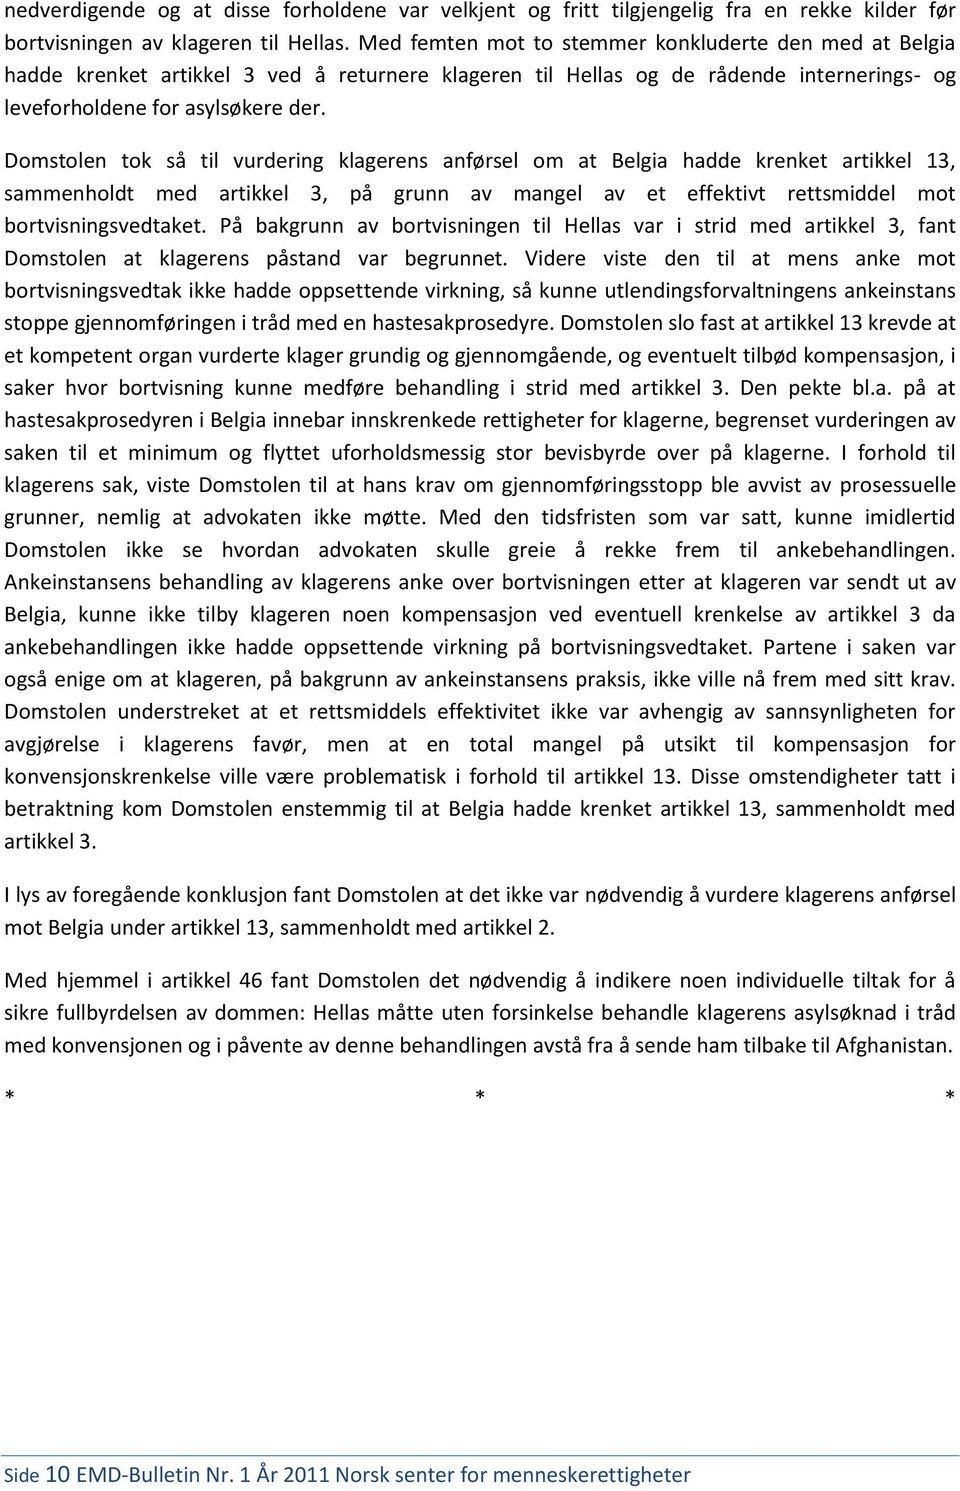 Domstolen tok så til vurdering klagerens anførsel om at Belgia hadde krenket artikkel 13, sammenholdt med artikkel 3, på grunn av mangel av et effektivt rettsmiddel mot bortvisningsvedtaket.